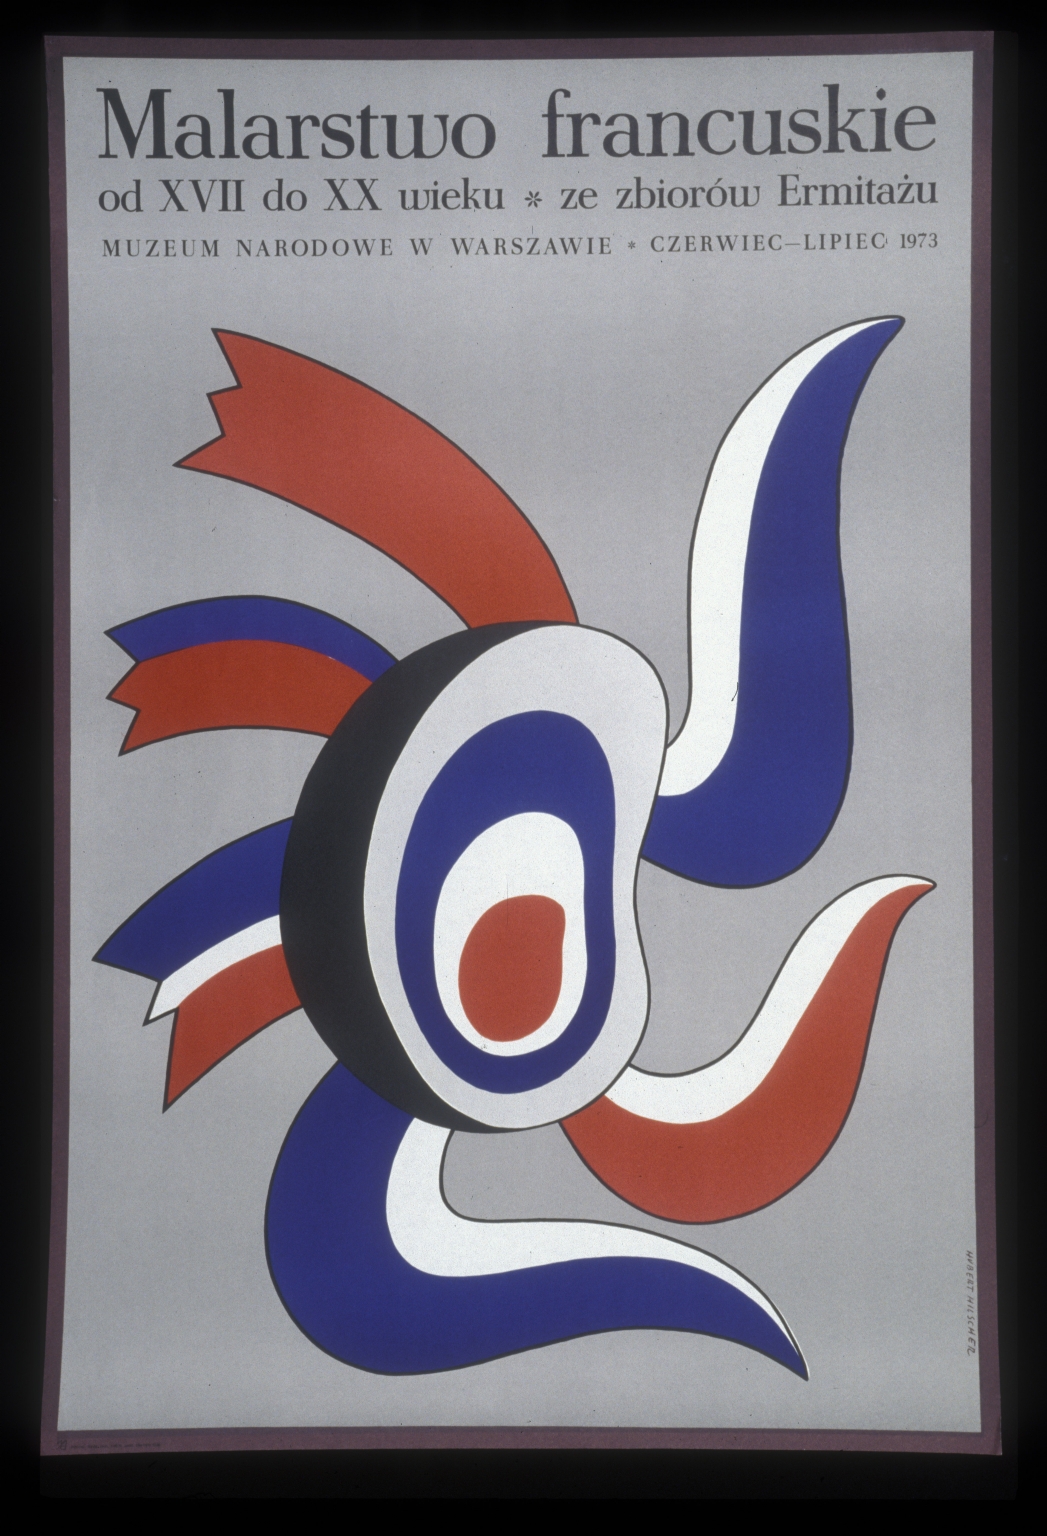 Malarstwo francuskie od XVII do XX wieku ze zbiorow Ermitazu: Muzeum Narodowe w Warszawie, czerwiec-lipiec 1973